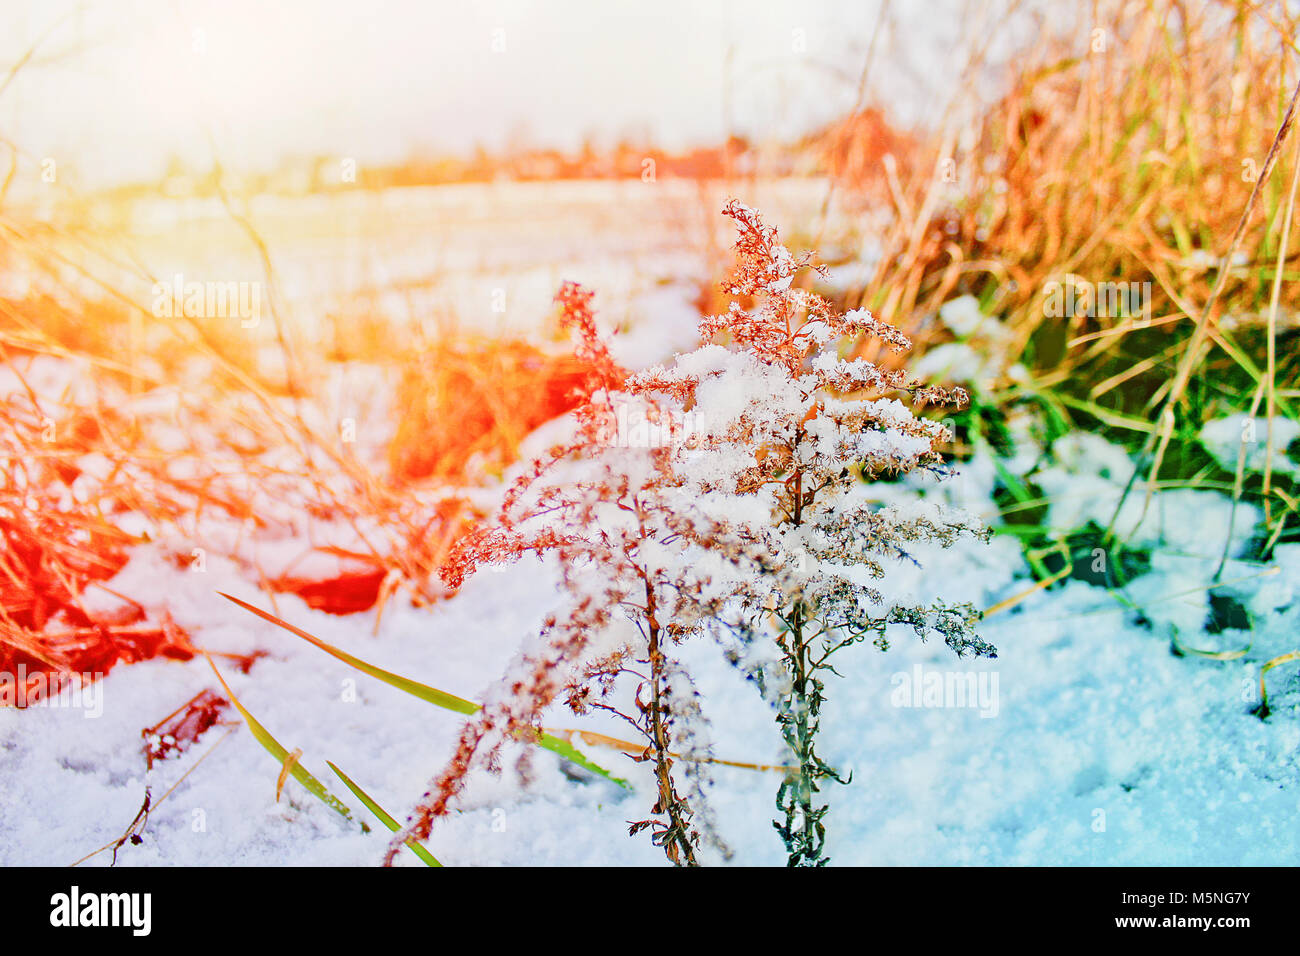 Fiore secco ed erba ricoperta di neve, colorata in blu e arancione Foto  stock - Alamy